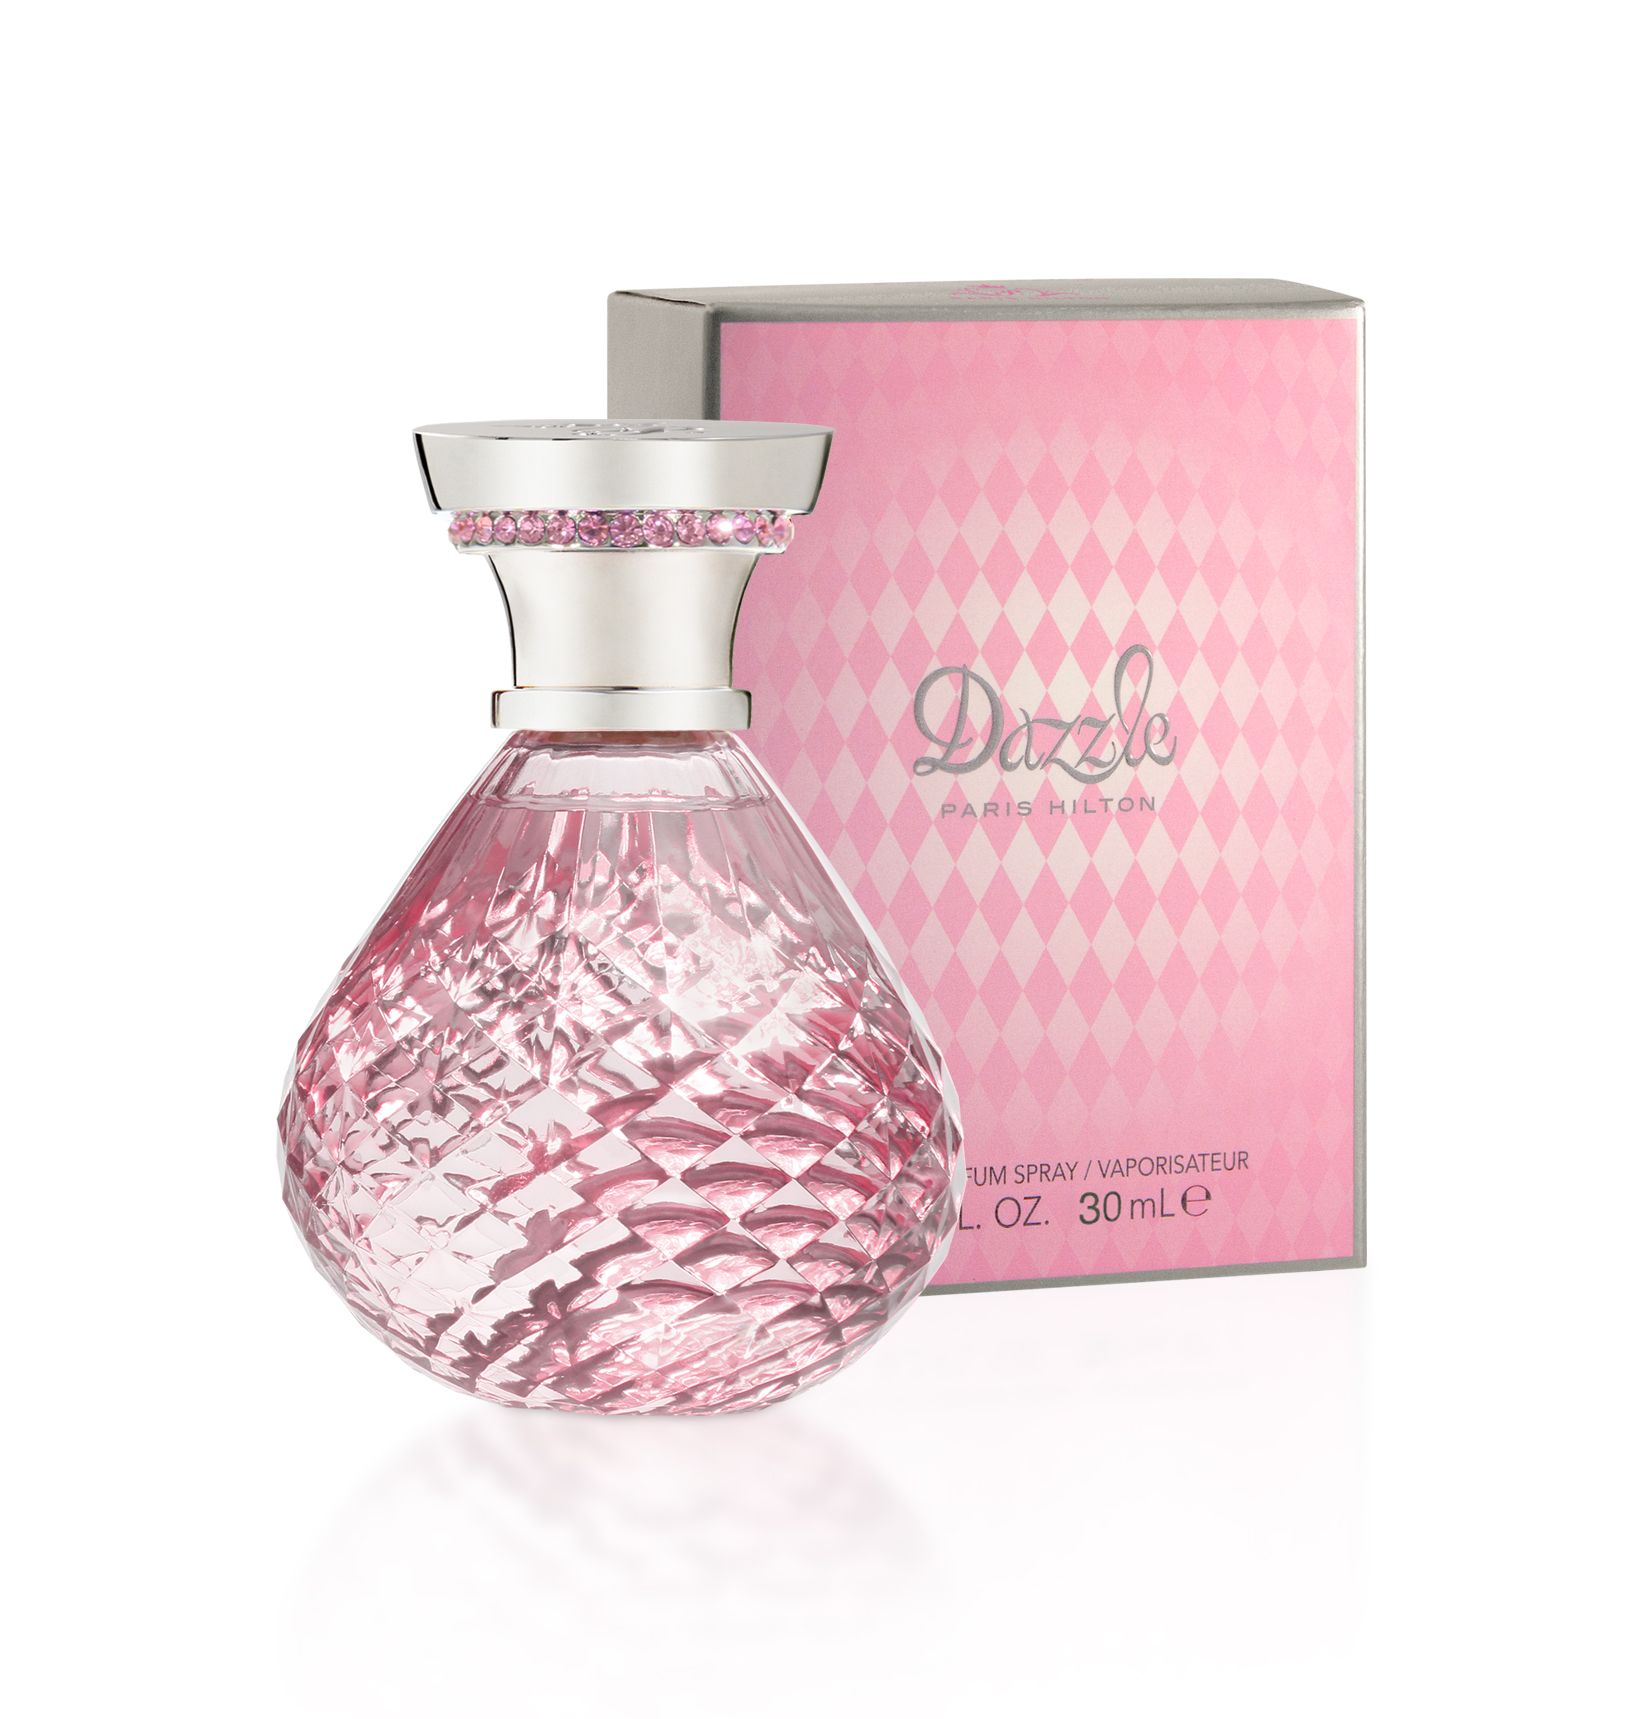 Paris Hilton Dazzle Eau De Parfum 1.0 oz Spray